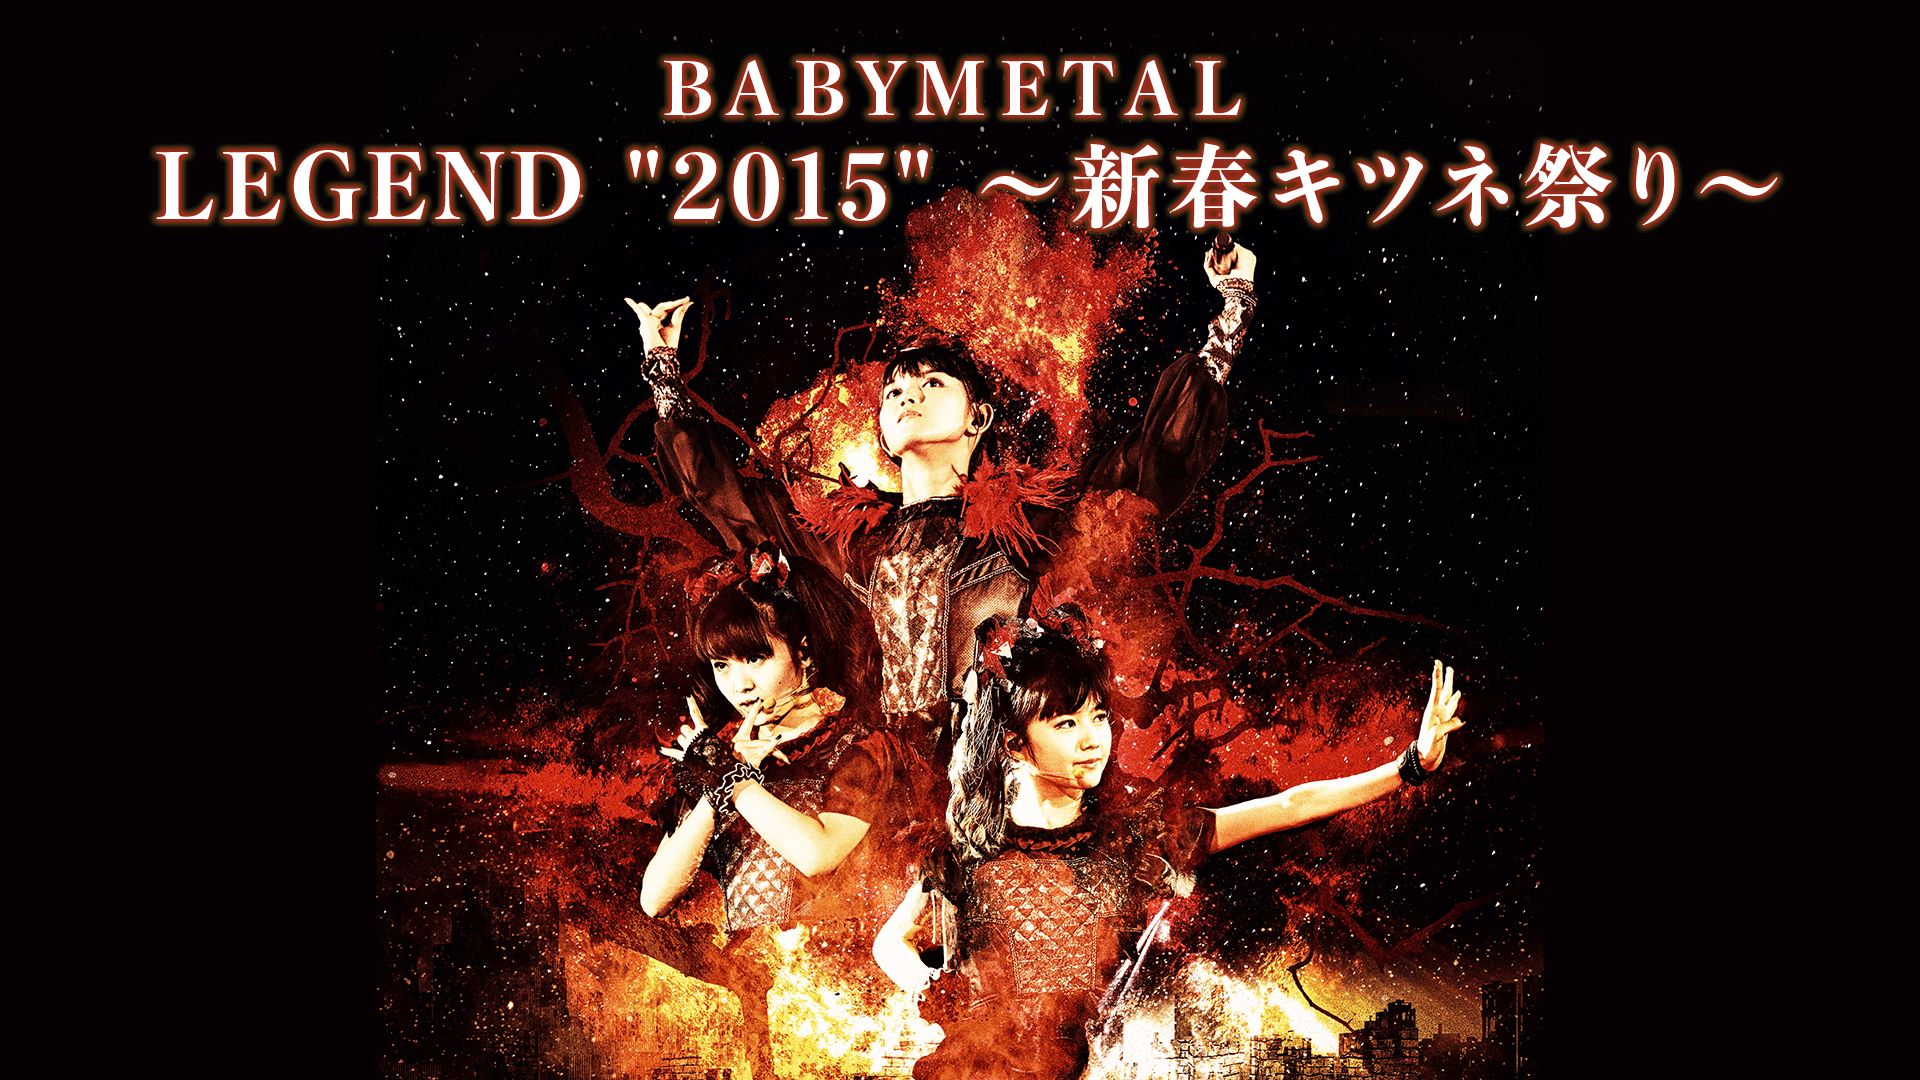 人気トレンド (未開封CD) Amazon.co.jp BABY - METAL BABYMETAL LEGEND 2015 新春キツネ祭 2015  bn-sports.co.jp